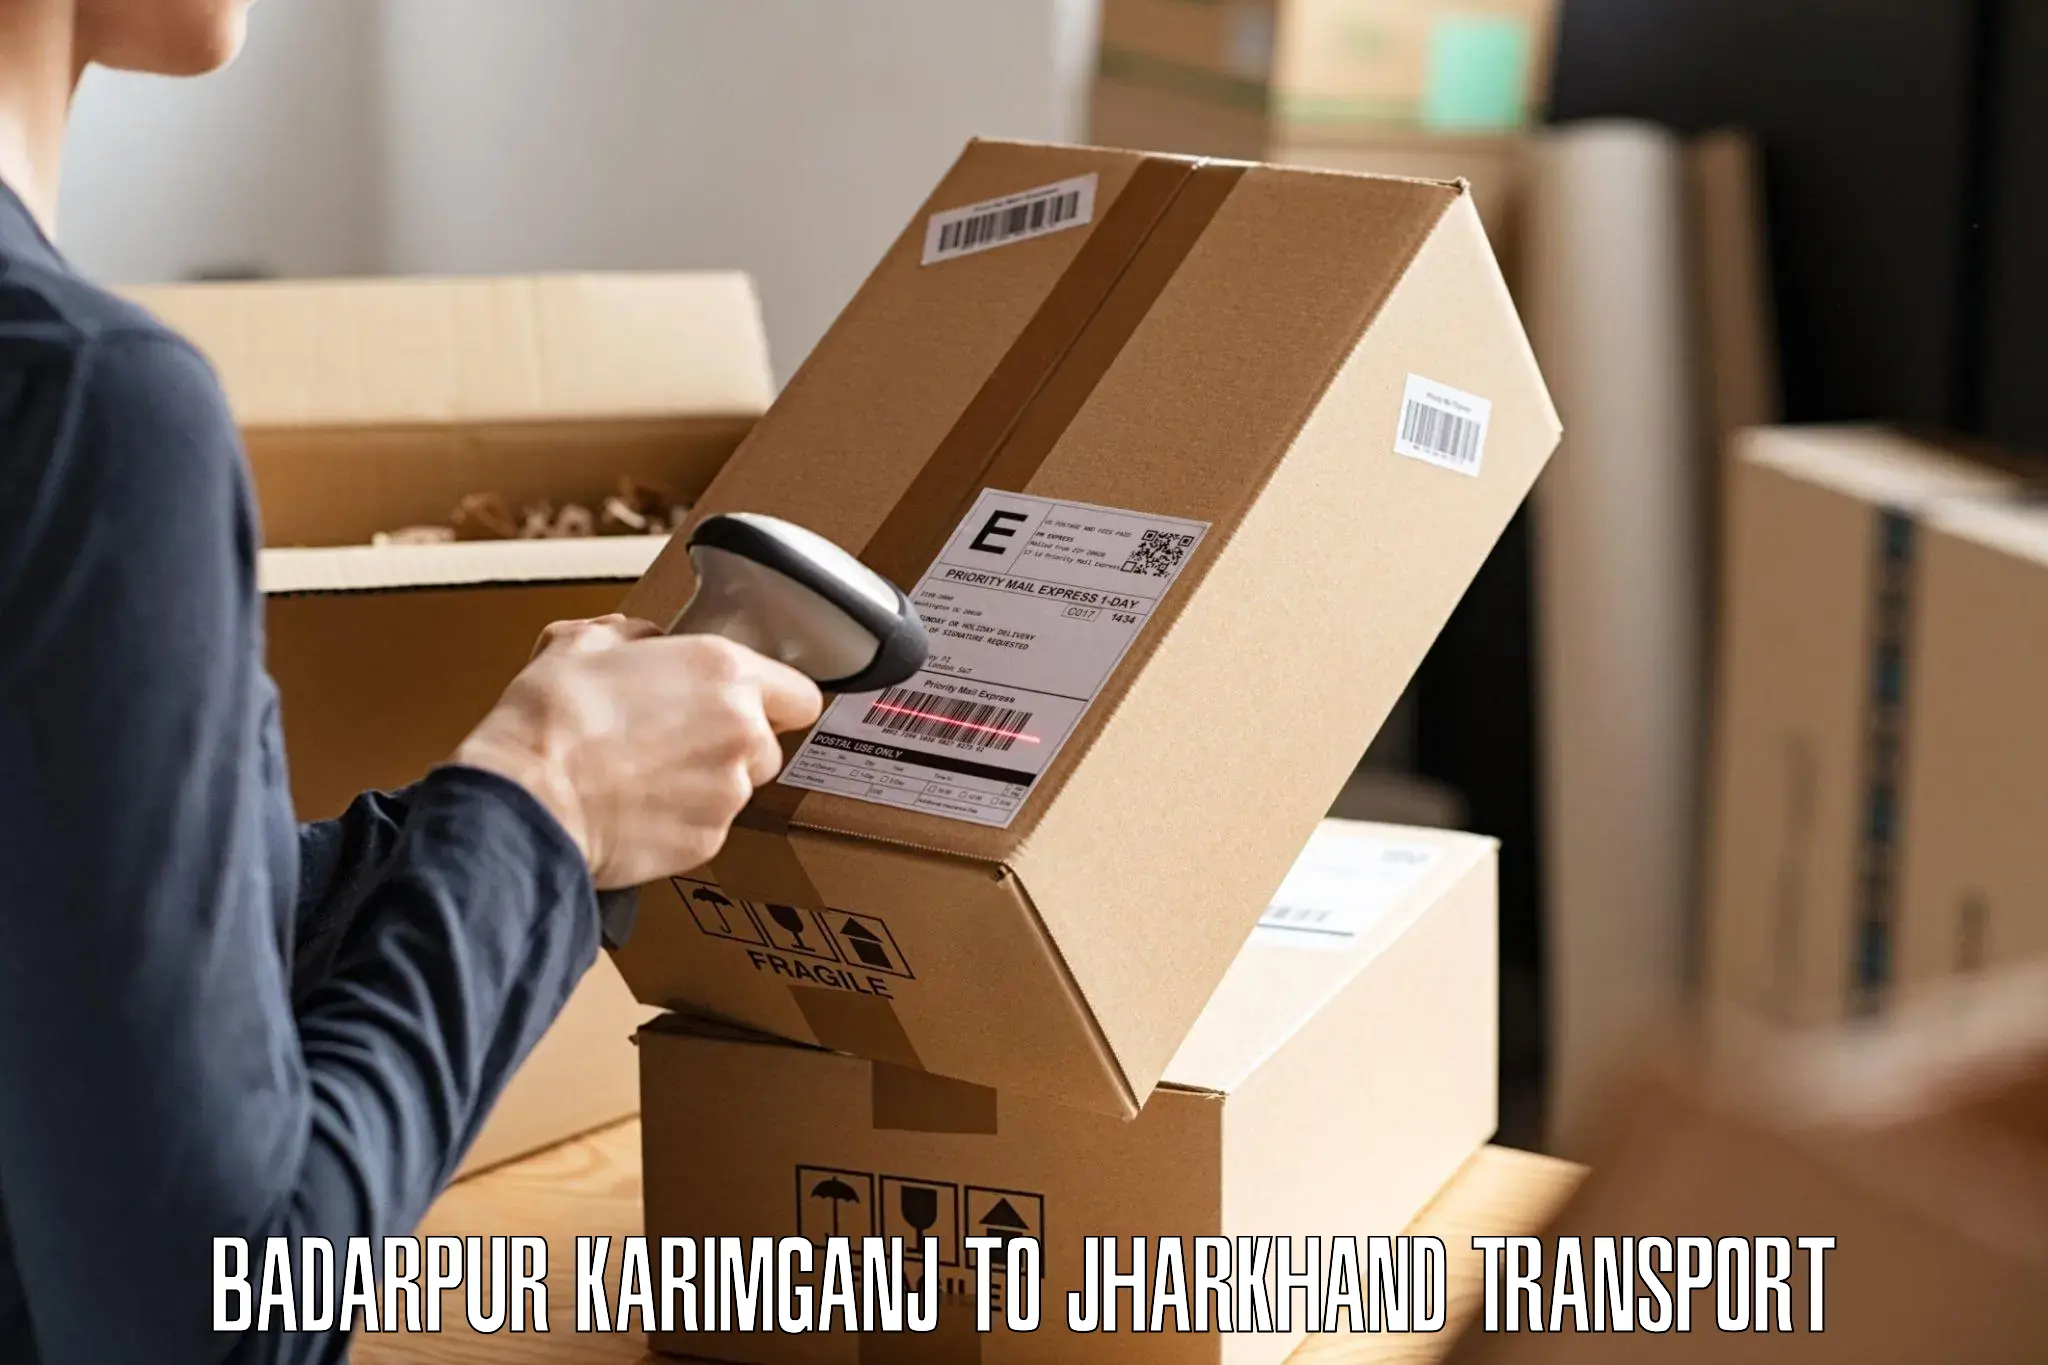 Daily parcel service transport Badarpur Karimganj to Chandankiyari